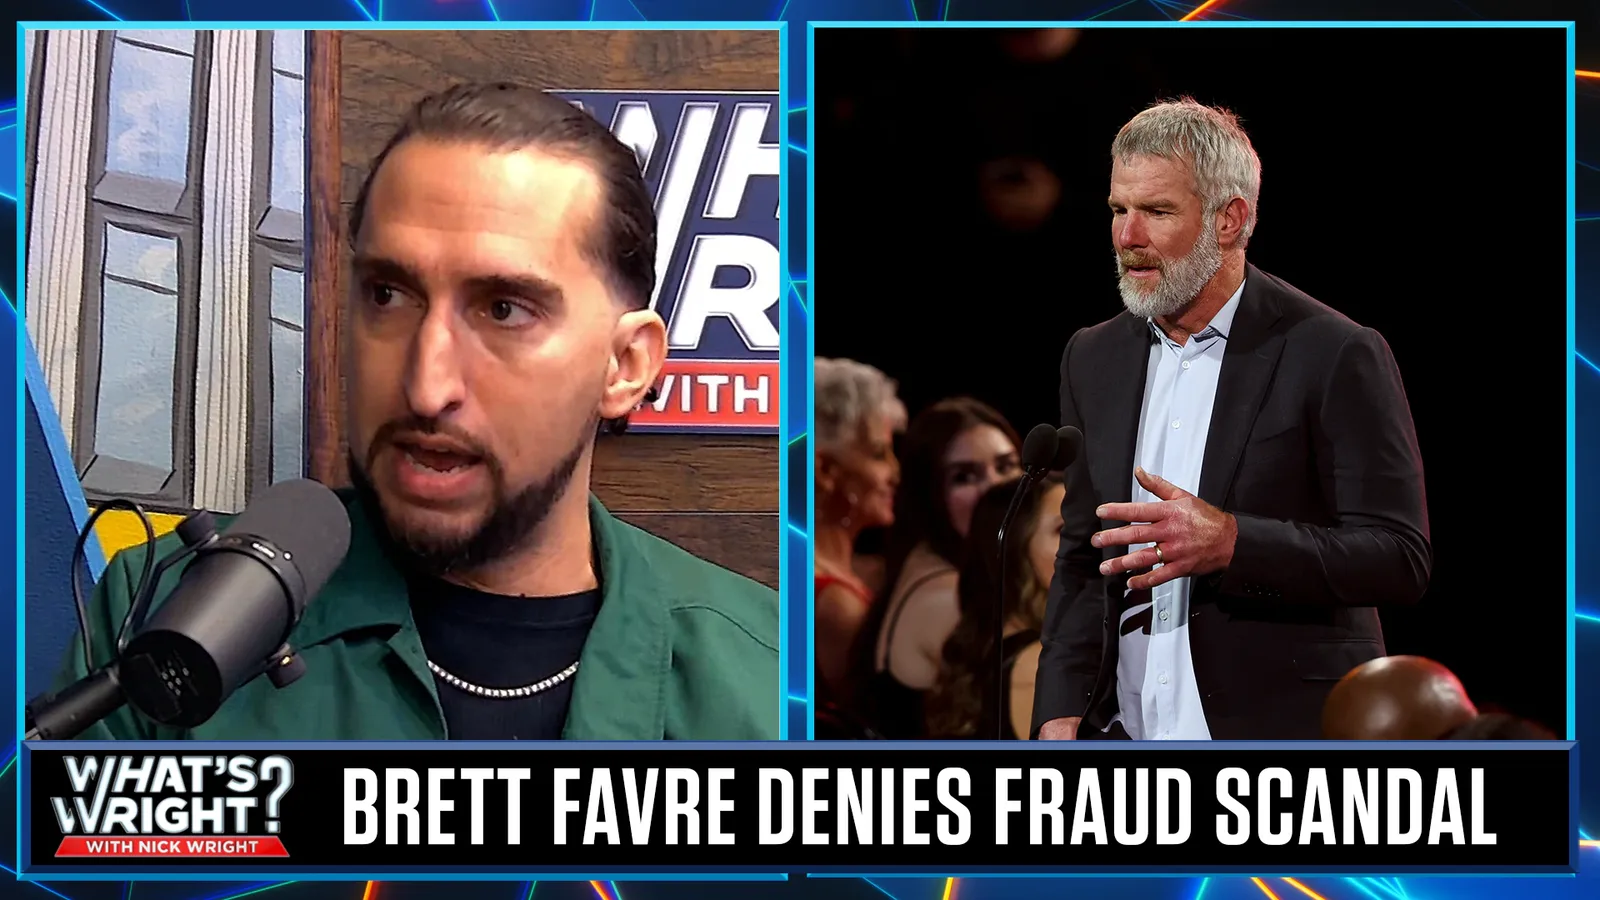 Nick does not buy Brett Favre denial in Mississippi fraud scandal